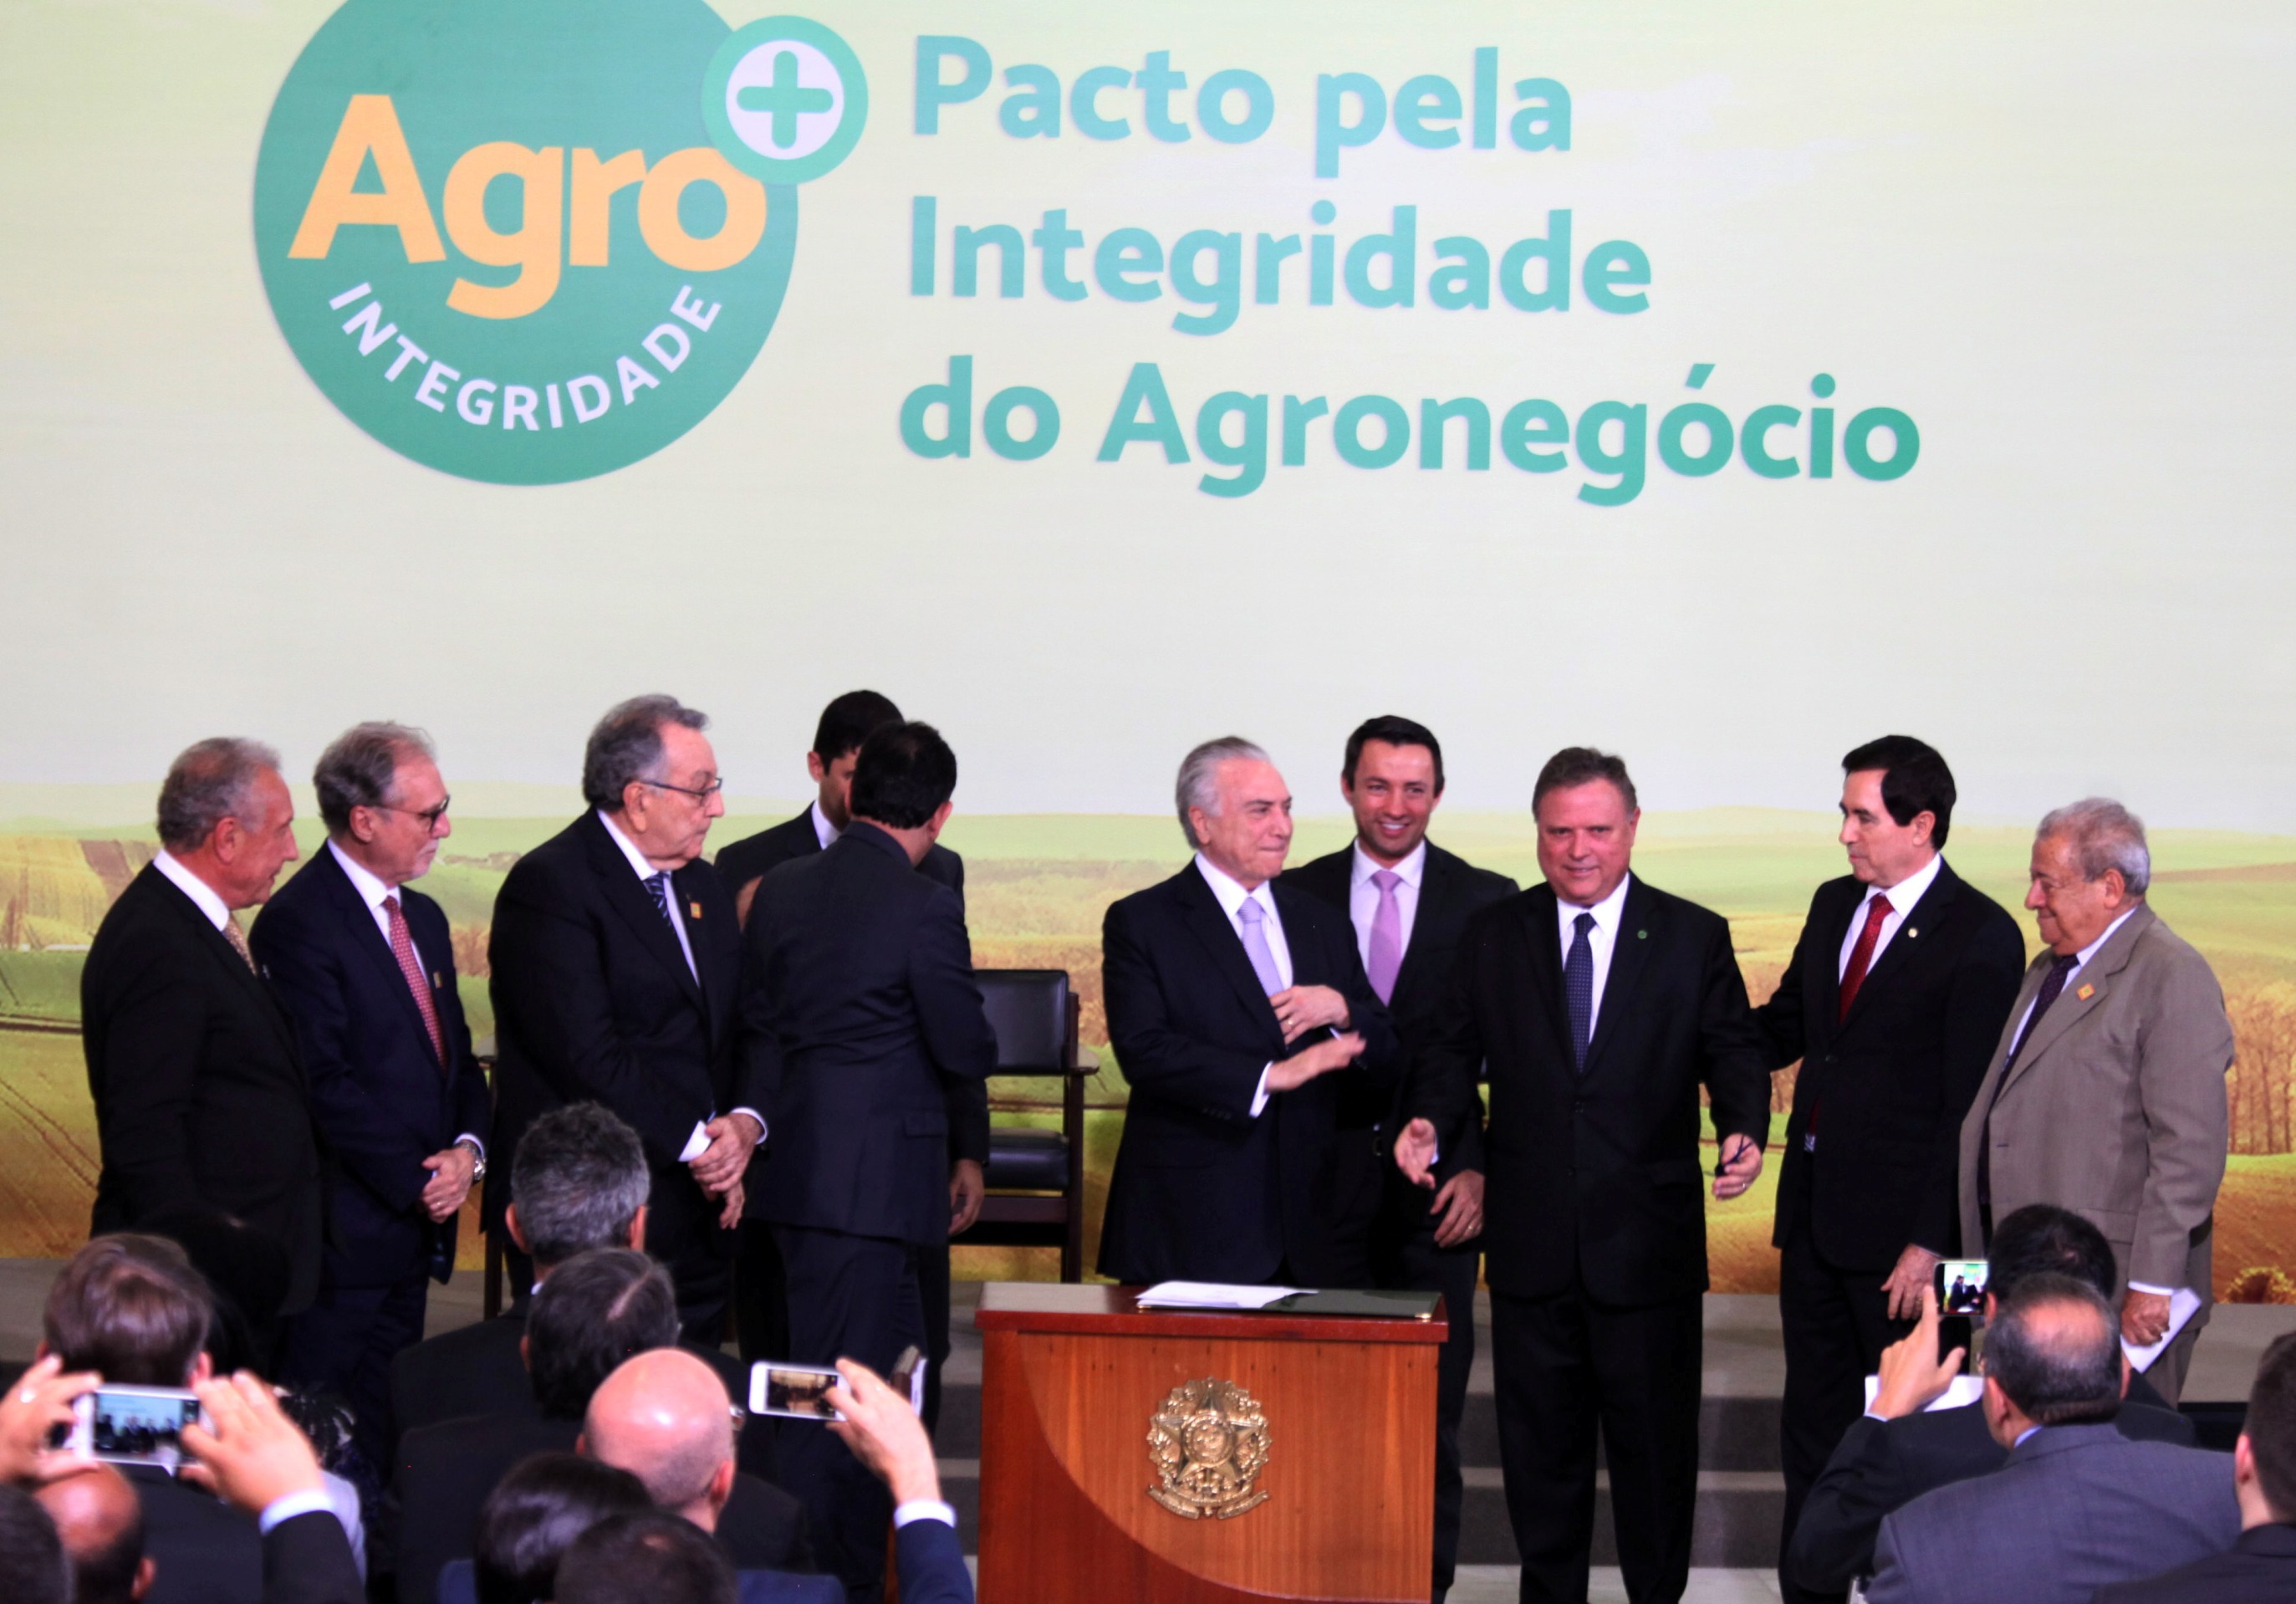 Ministério da Agricultura lança selo Agro Mais Integridade